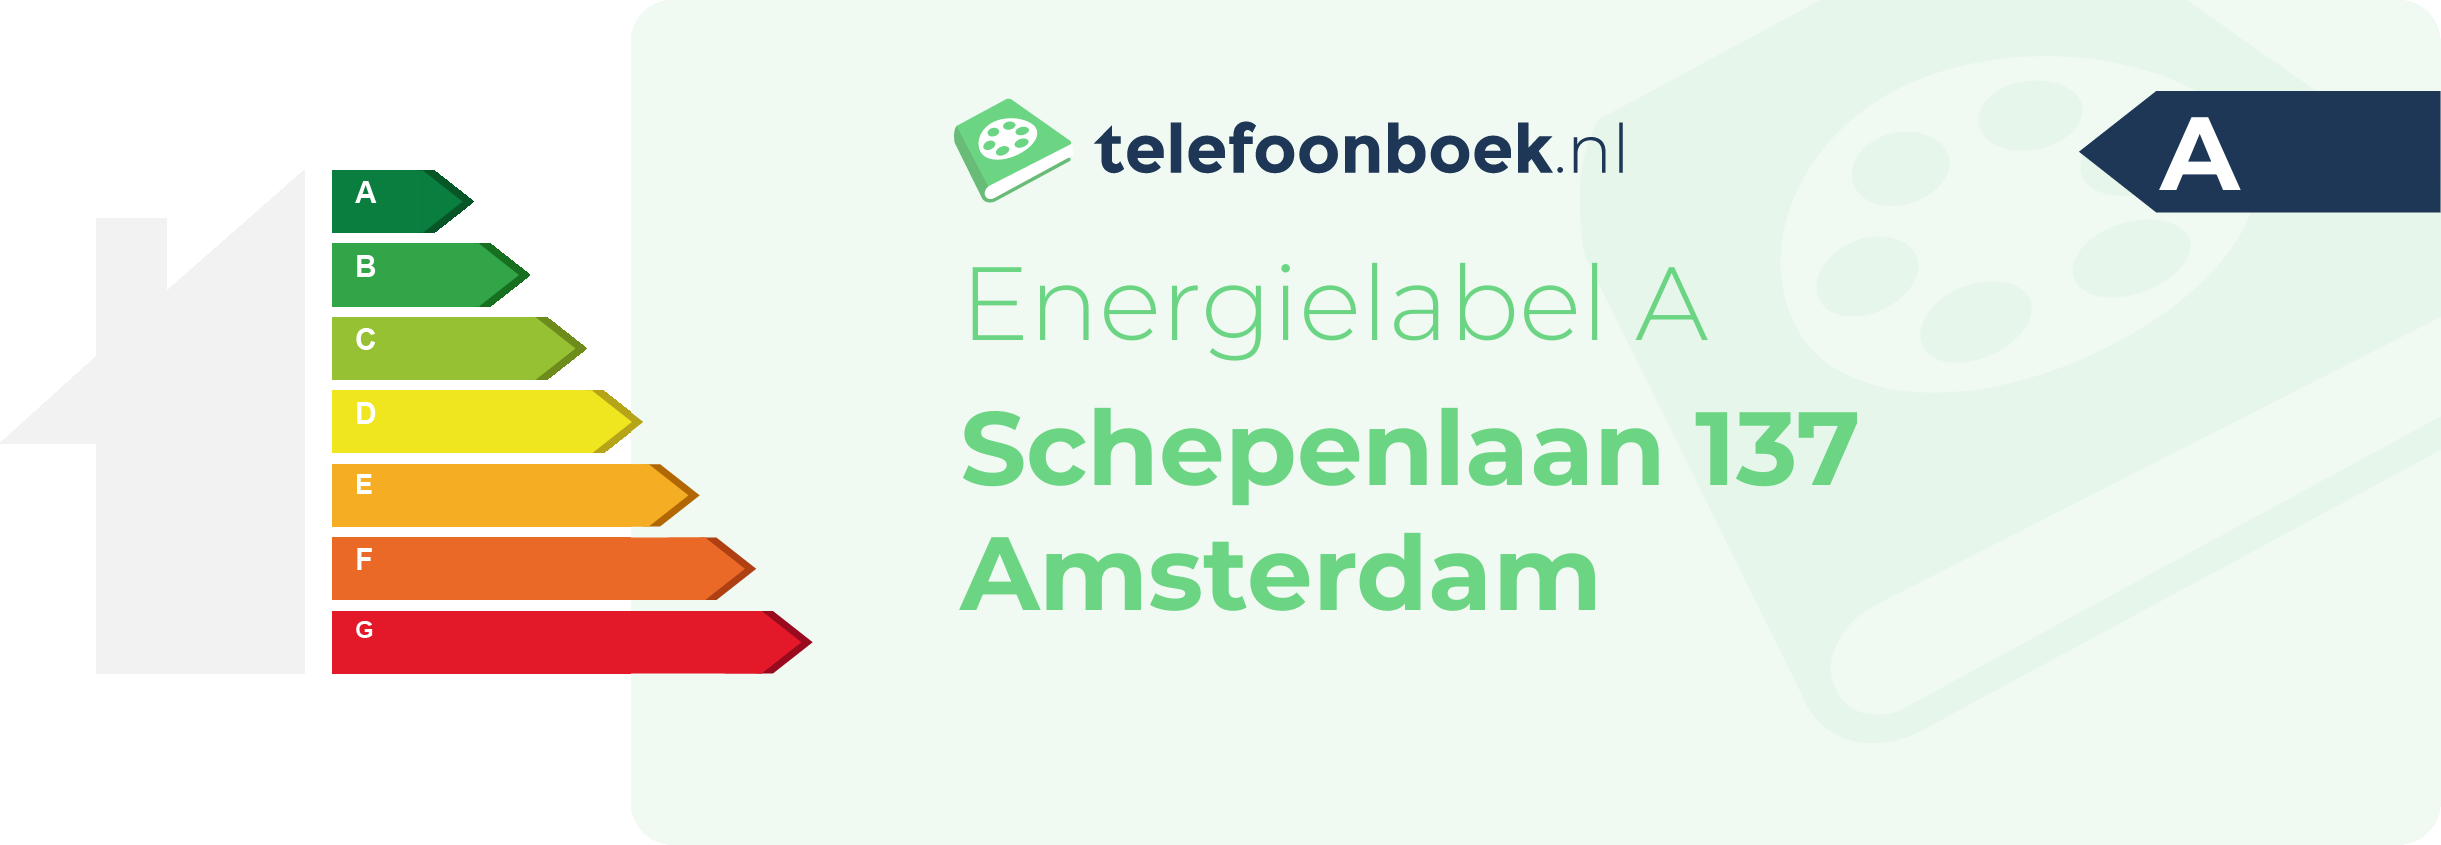 Energielabel Schepenlaan 137 Amsterdam